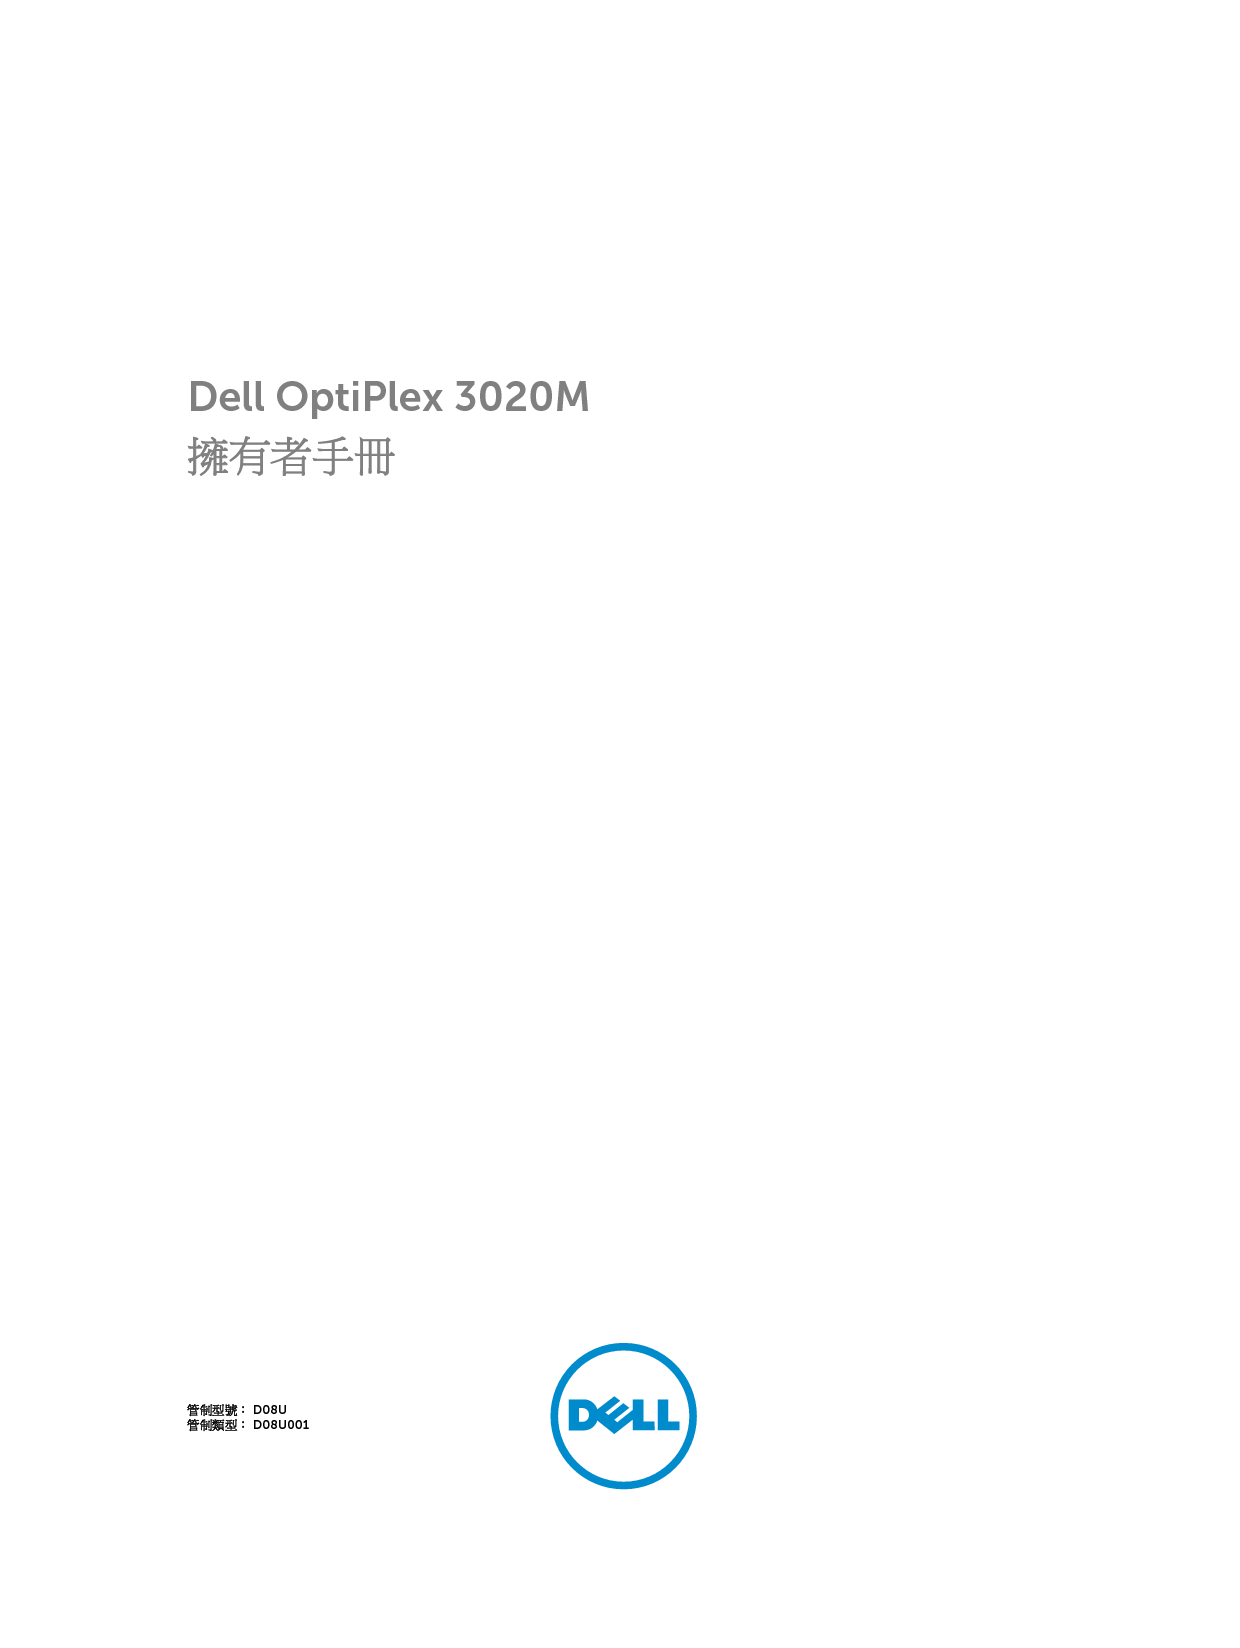 戴尔 Dell Optiplex 3020M 繁体 用户手册 封面